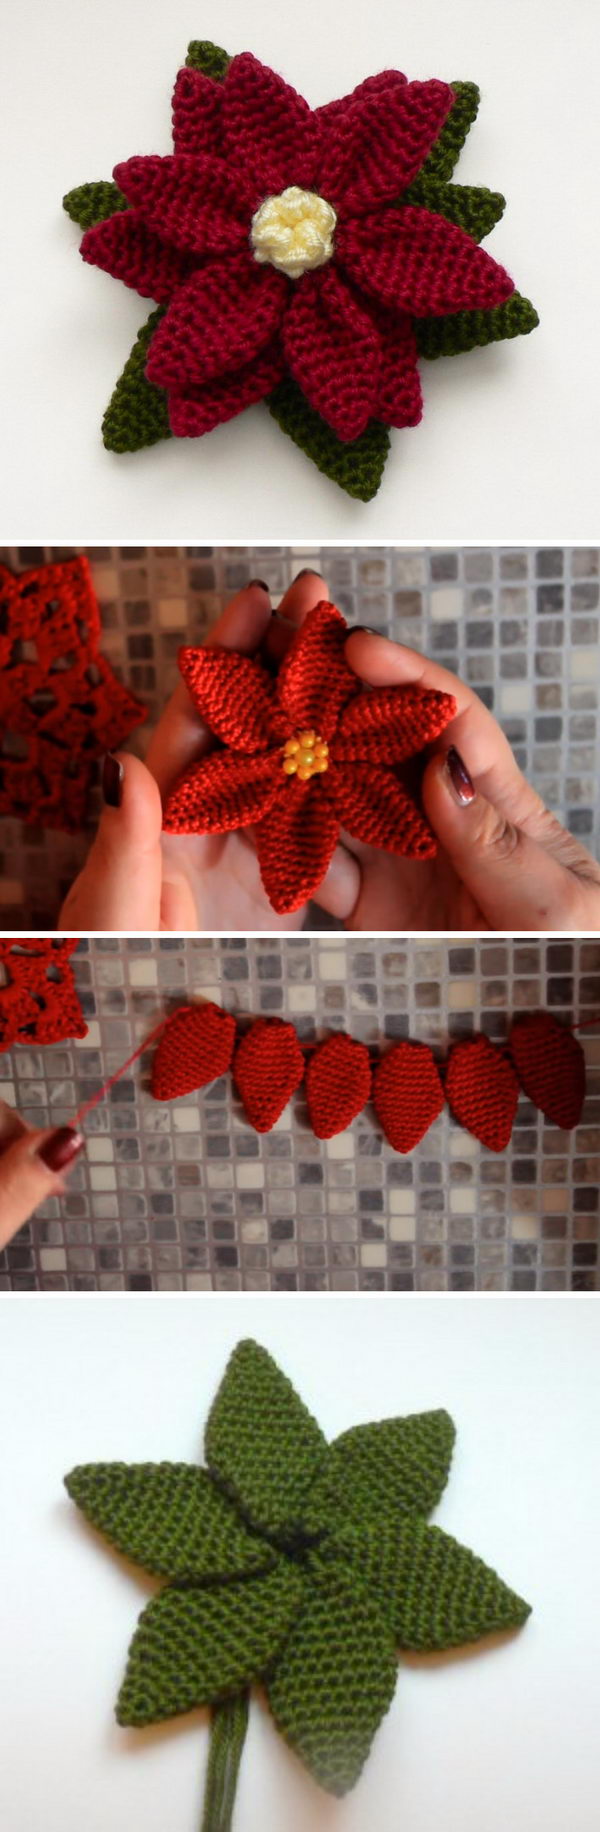 15+ Crochet Poinsettia Christmas Flower Ideas 2017